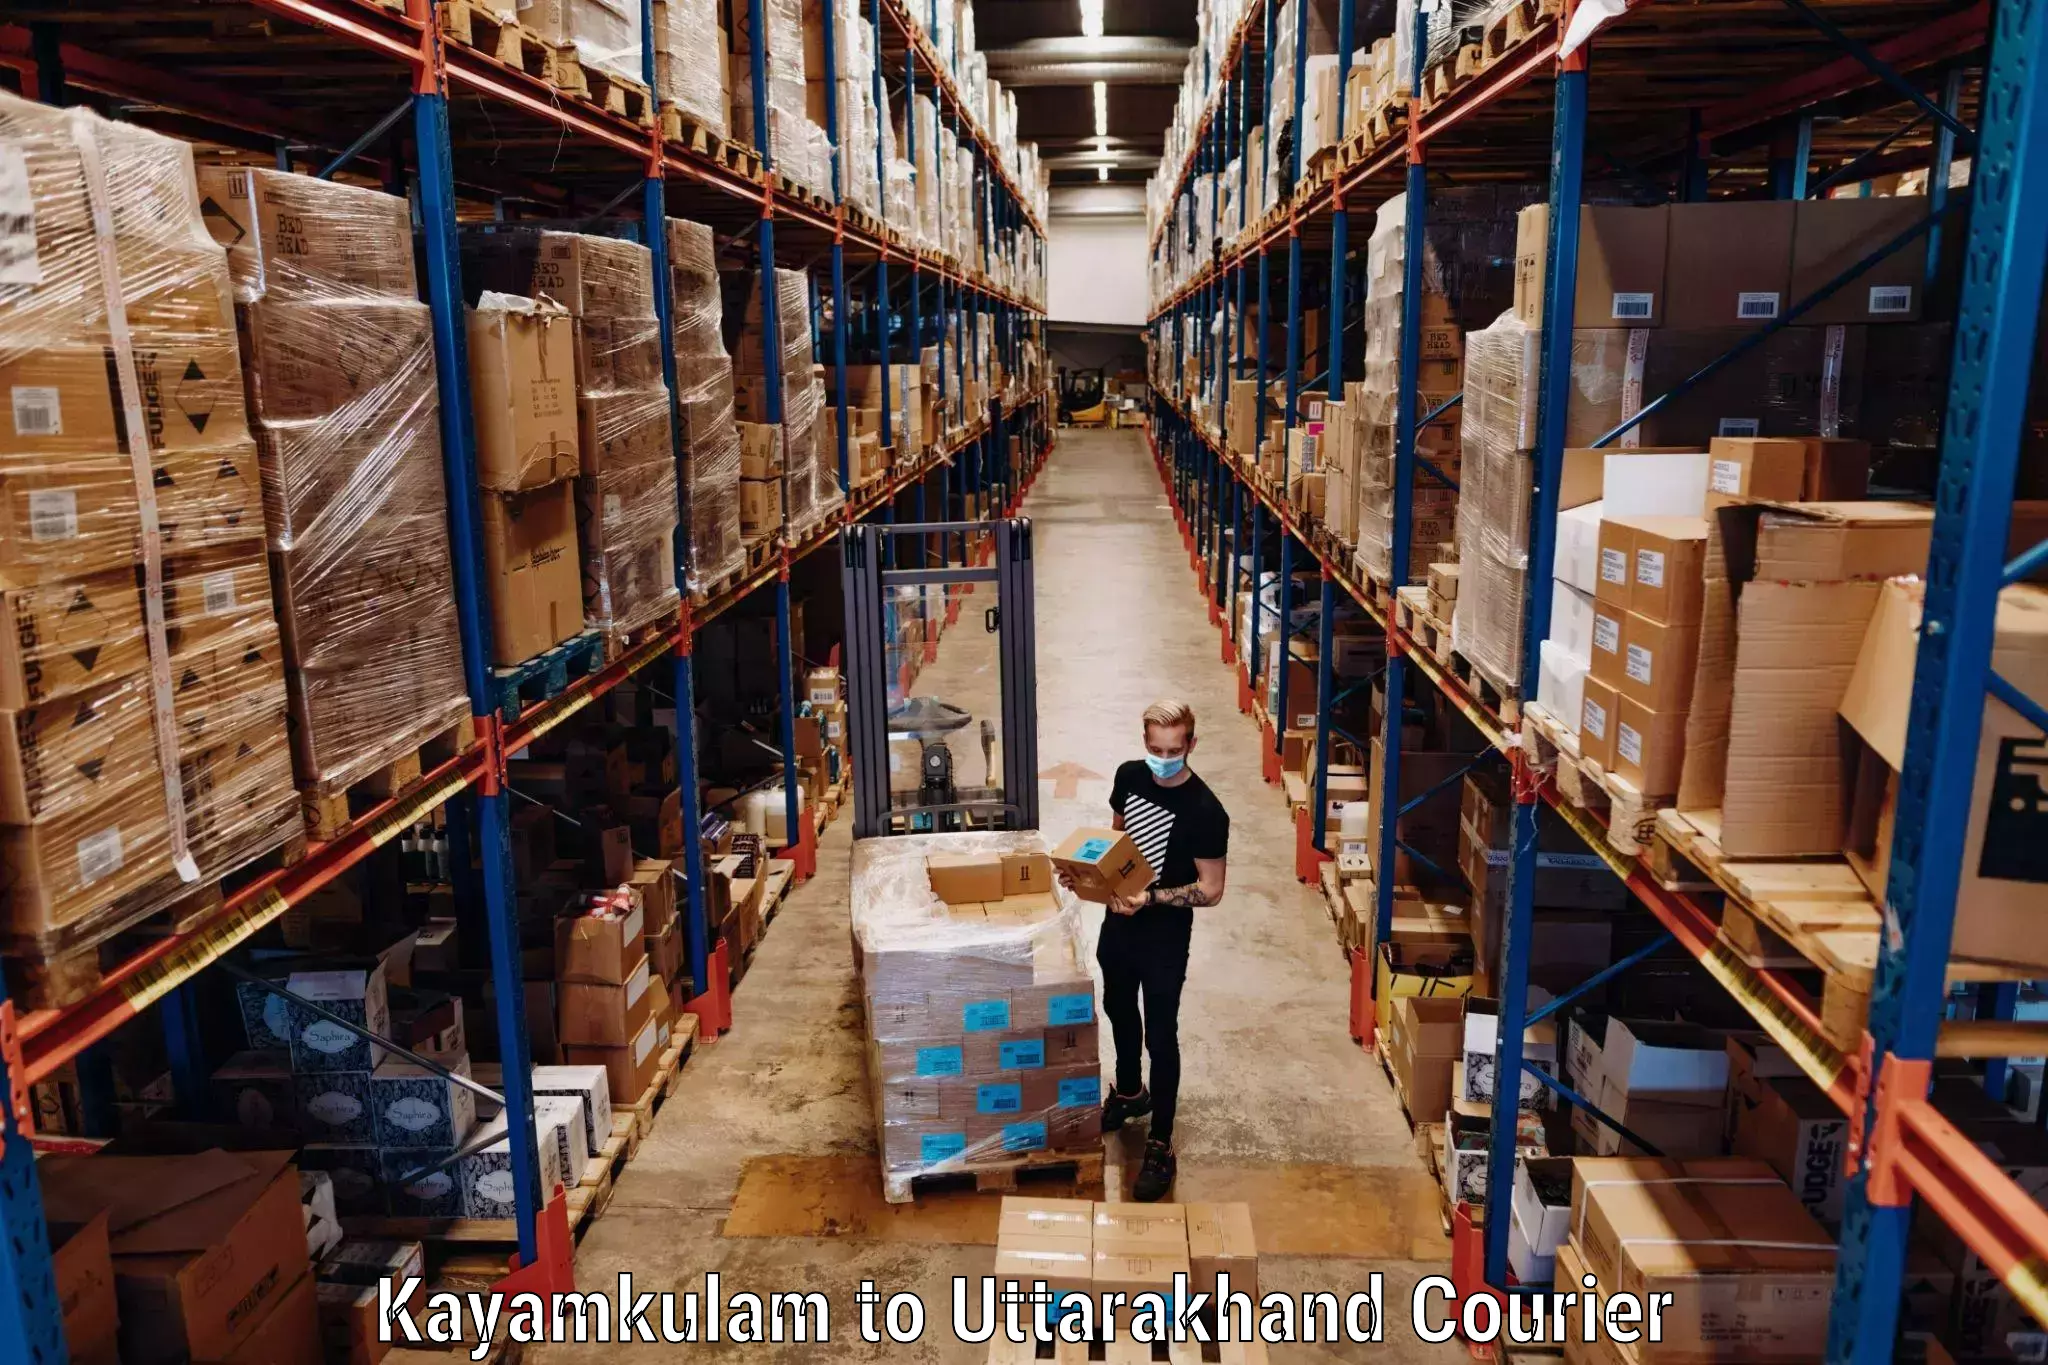 Baggage courier FAQs Kayamkulam to Nainital